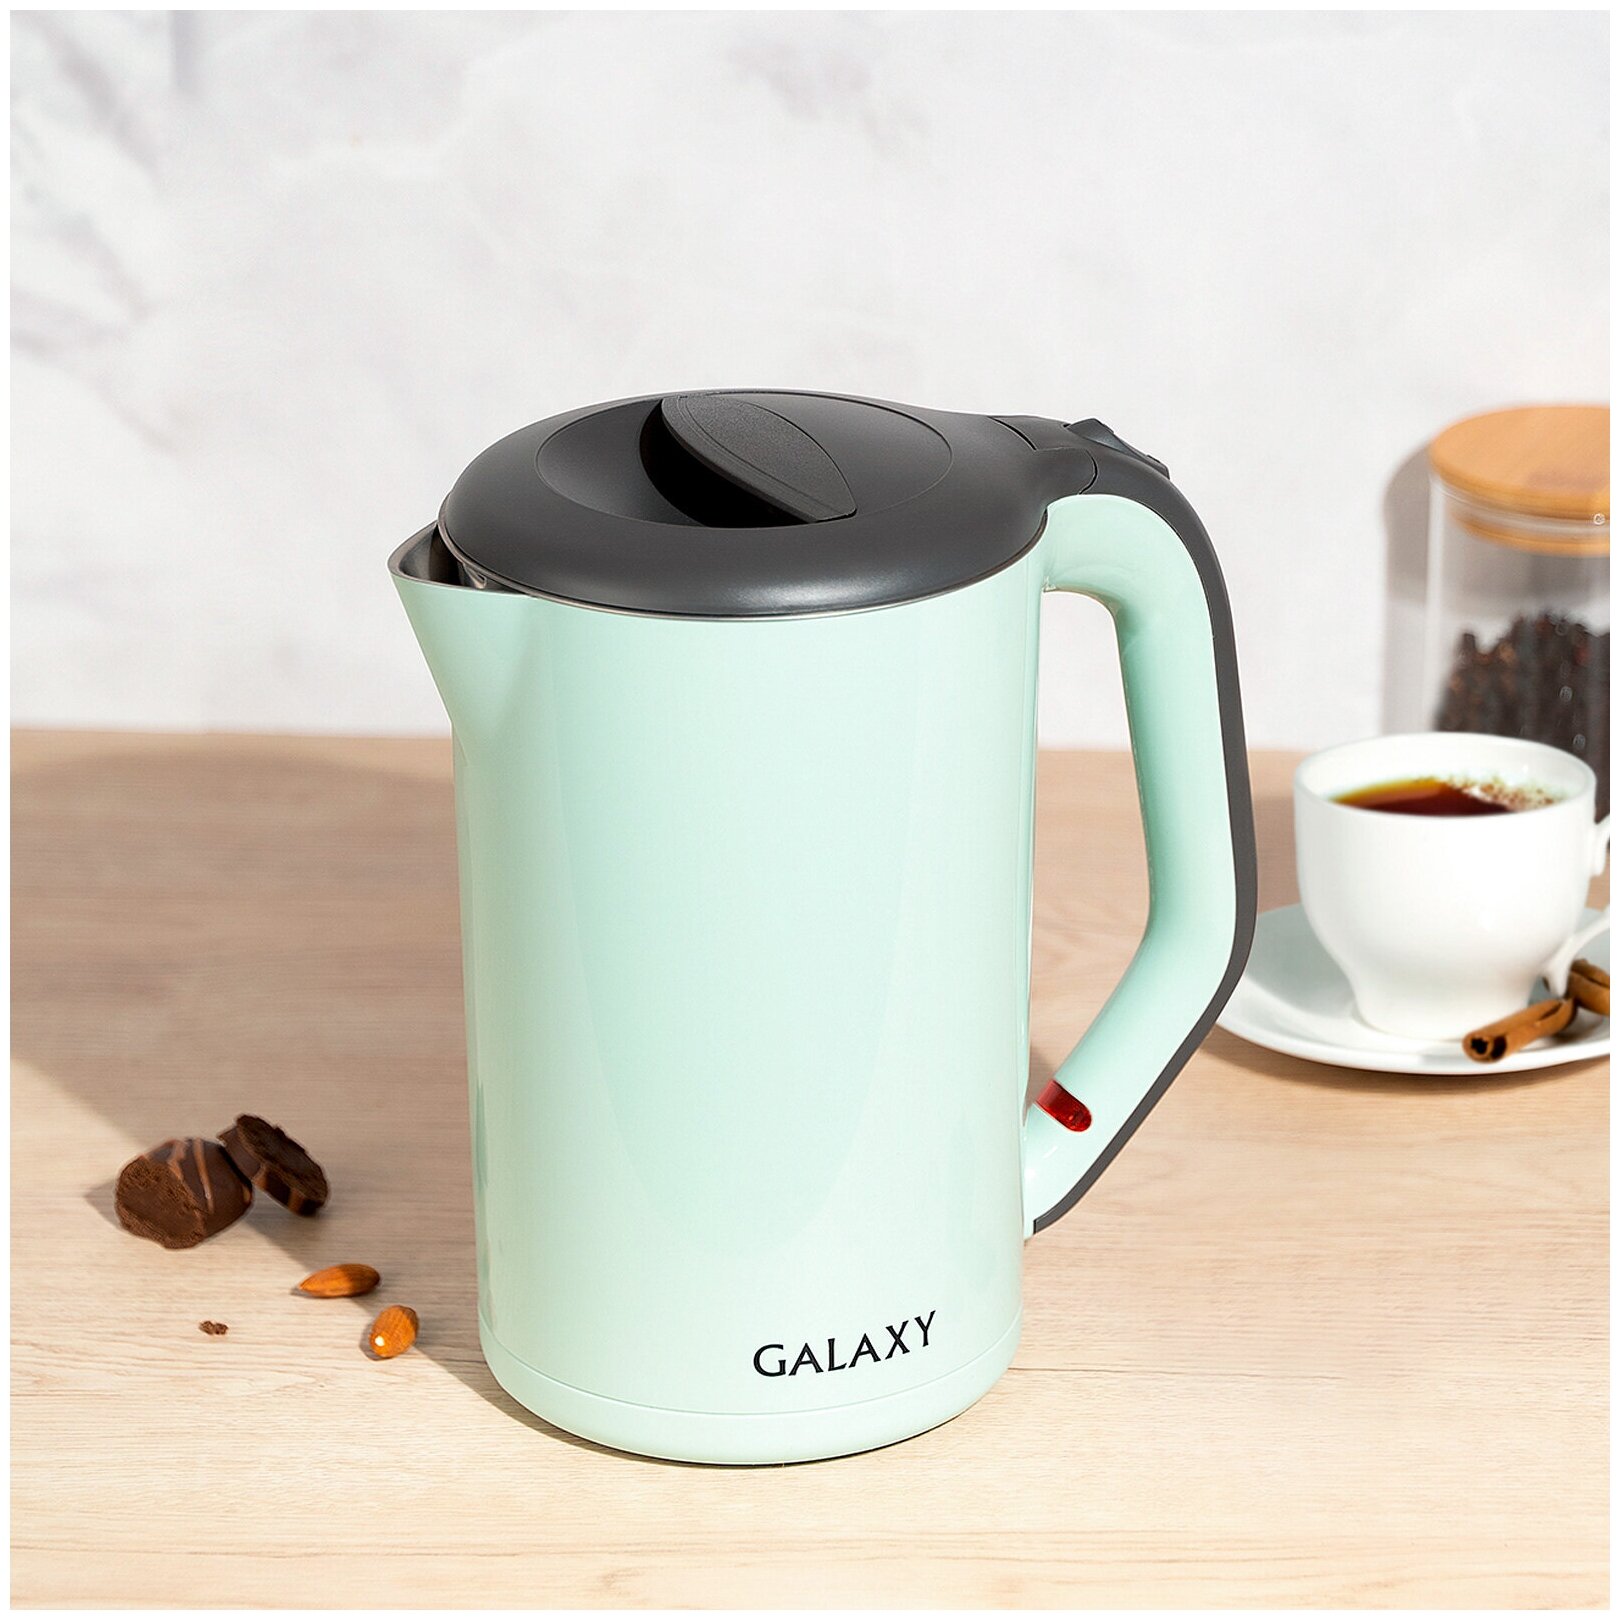 Чайник GALAXY GL 0330 салатовый